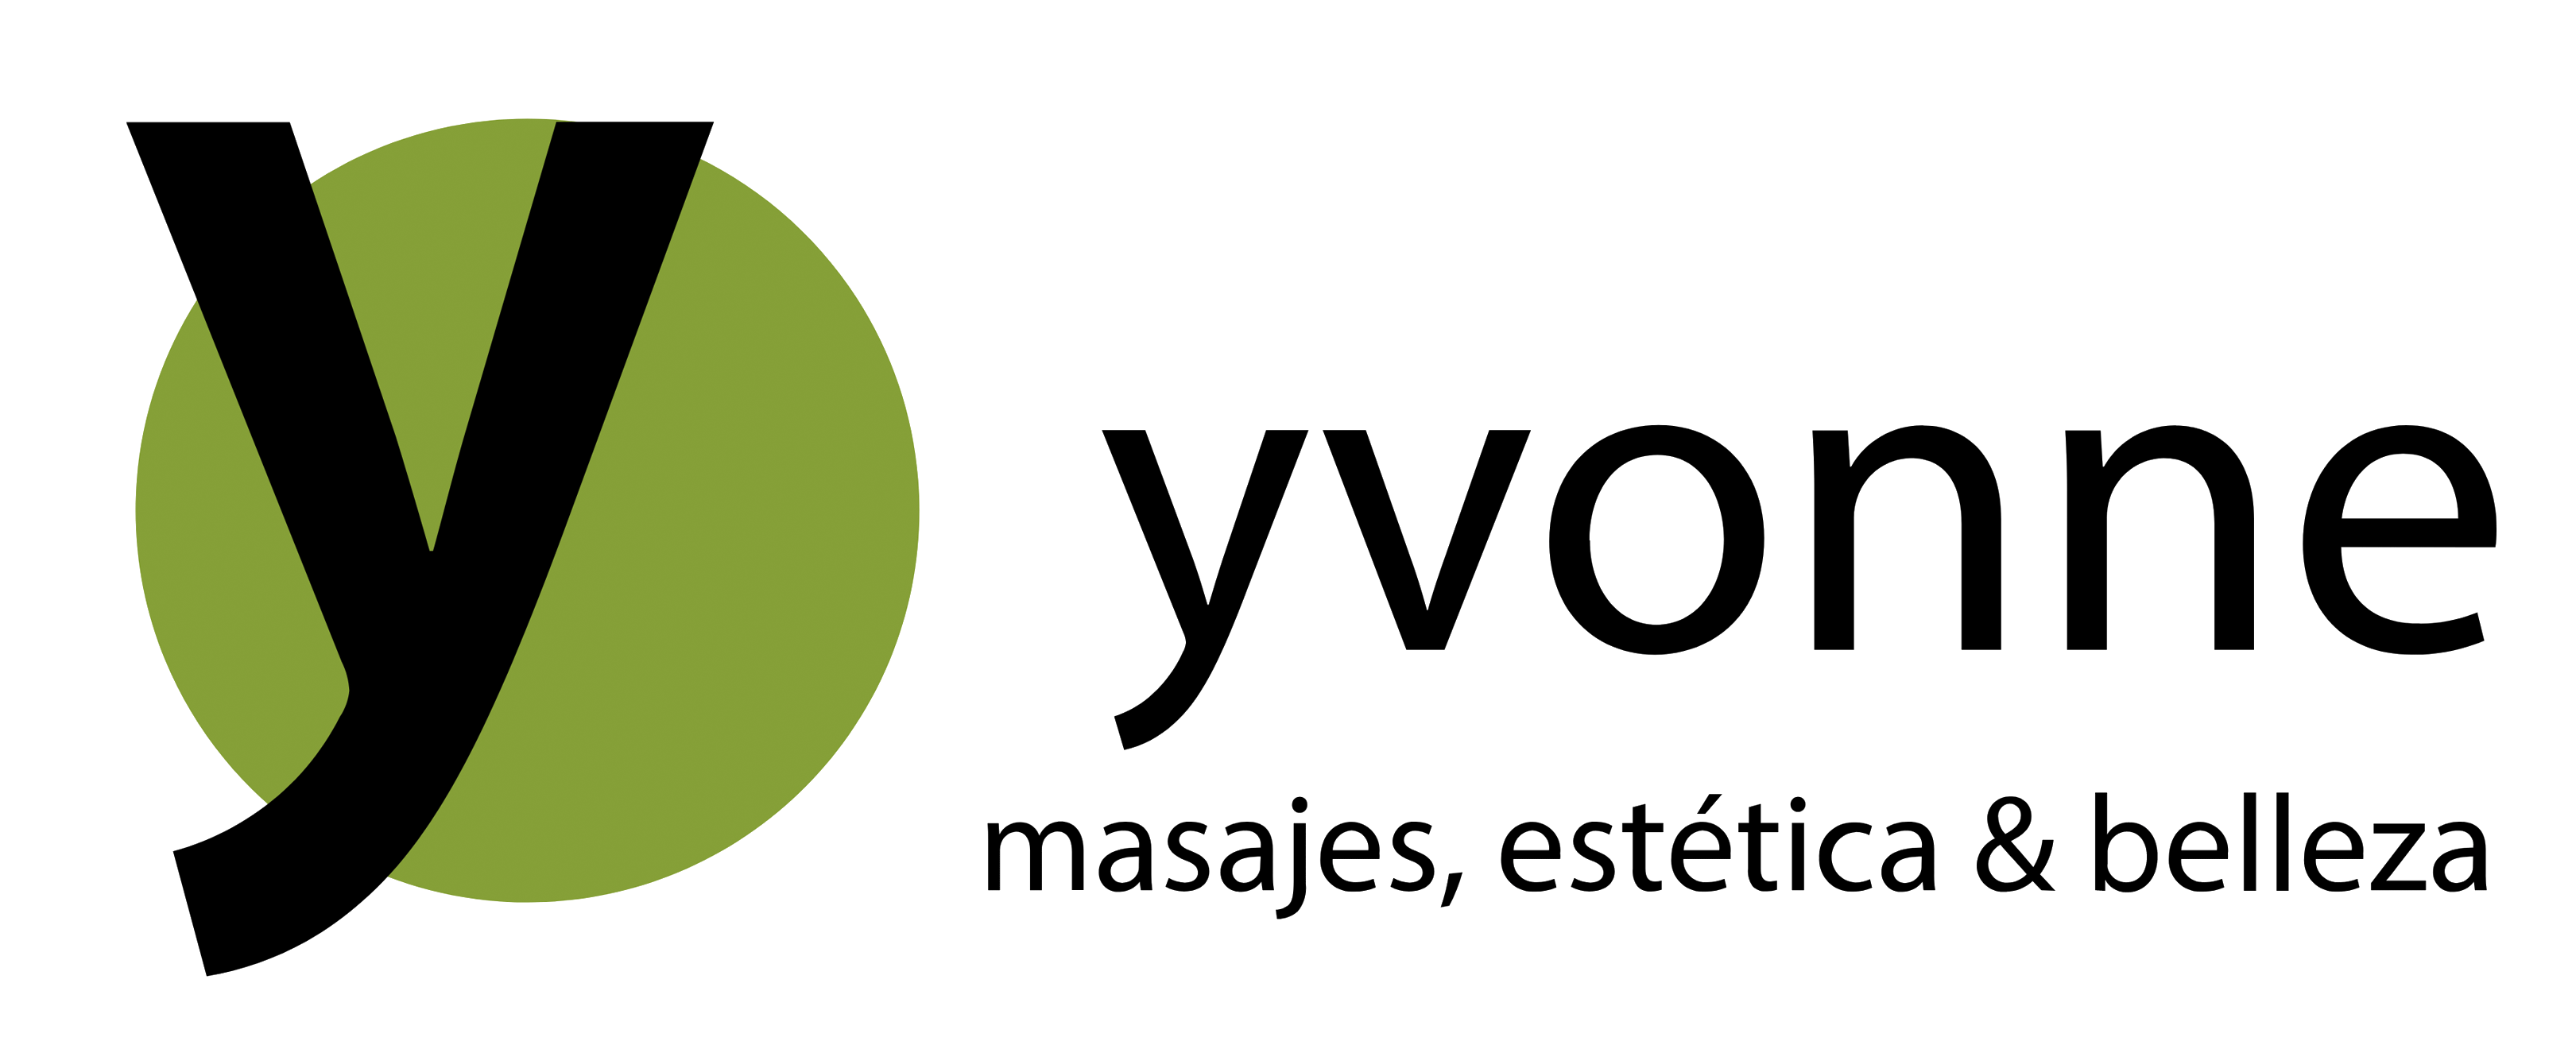 Logo Yvonne - masajes, estética & belleza